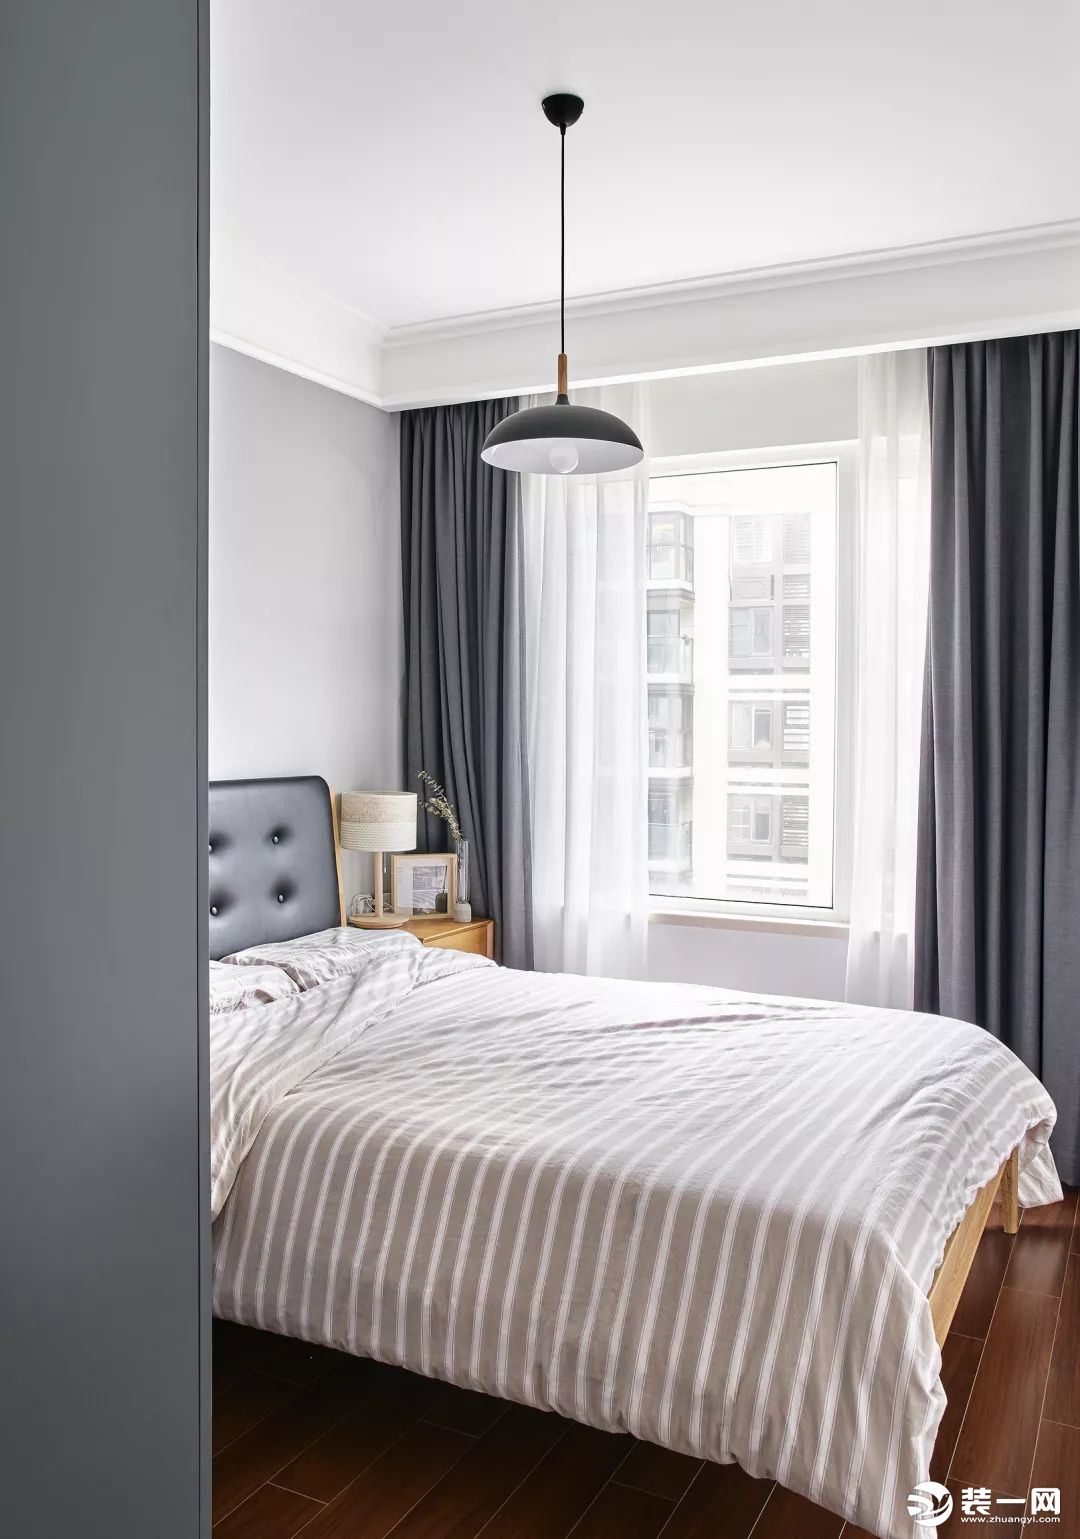  次卧，灰色窗帘与衣柜简洁优雅，搭配黑色的皮艺靠背床及轻松舒适的床品，呈现出一个随性自在的睡眠空间。